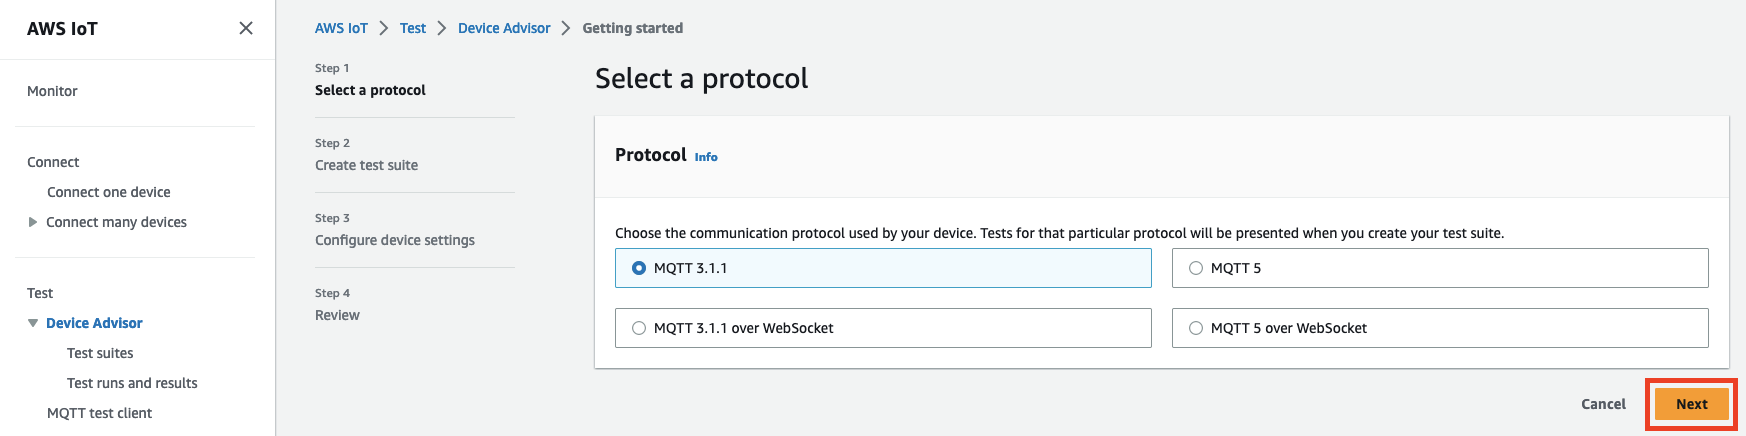 
                         设备顾问界面显示了选择用于测试物联网设备的通信协议（MQTT 3.1.1、MQTT 3.1.1 以上 WebSocket、MQTT 5、MQTT 5 以上） WebSocket的选项。
                    